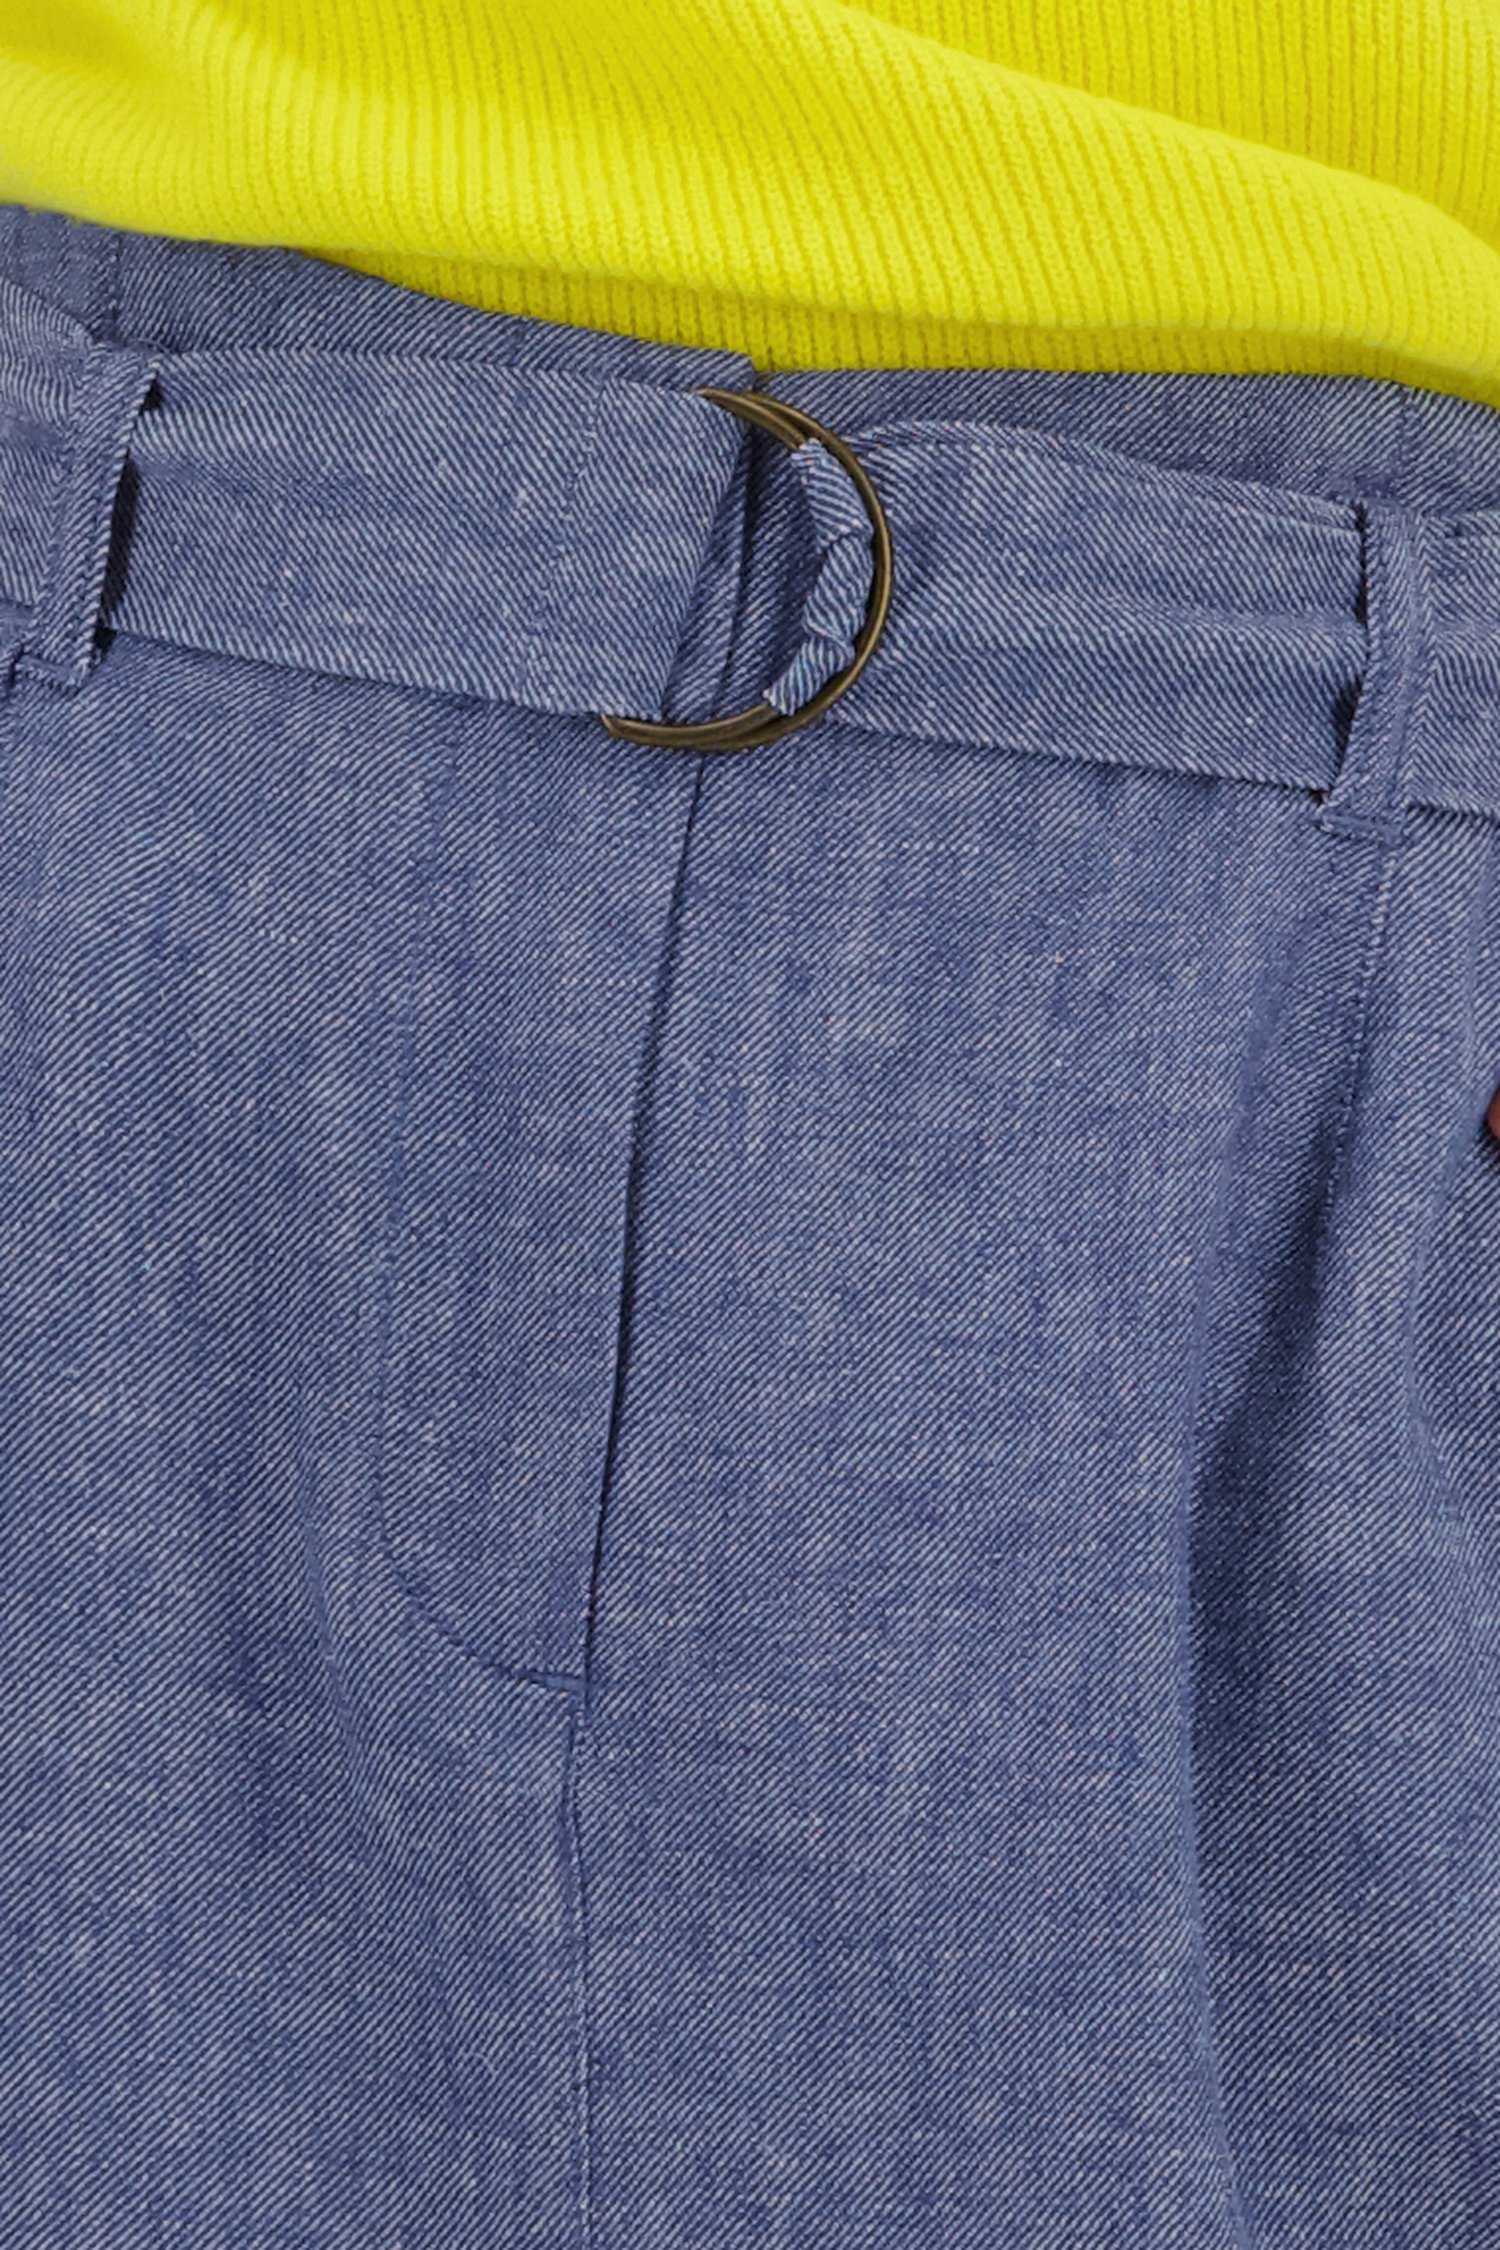 Jeansblauwe linnen rok van Libelle voor Dames